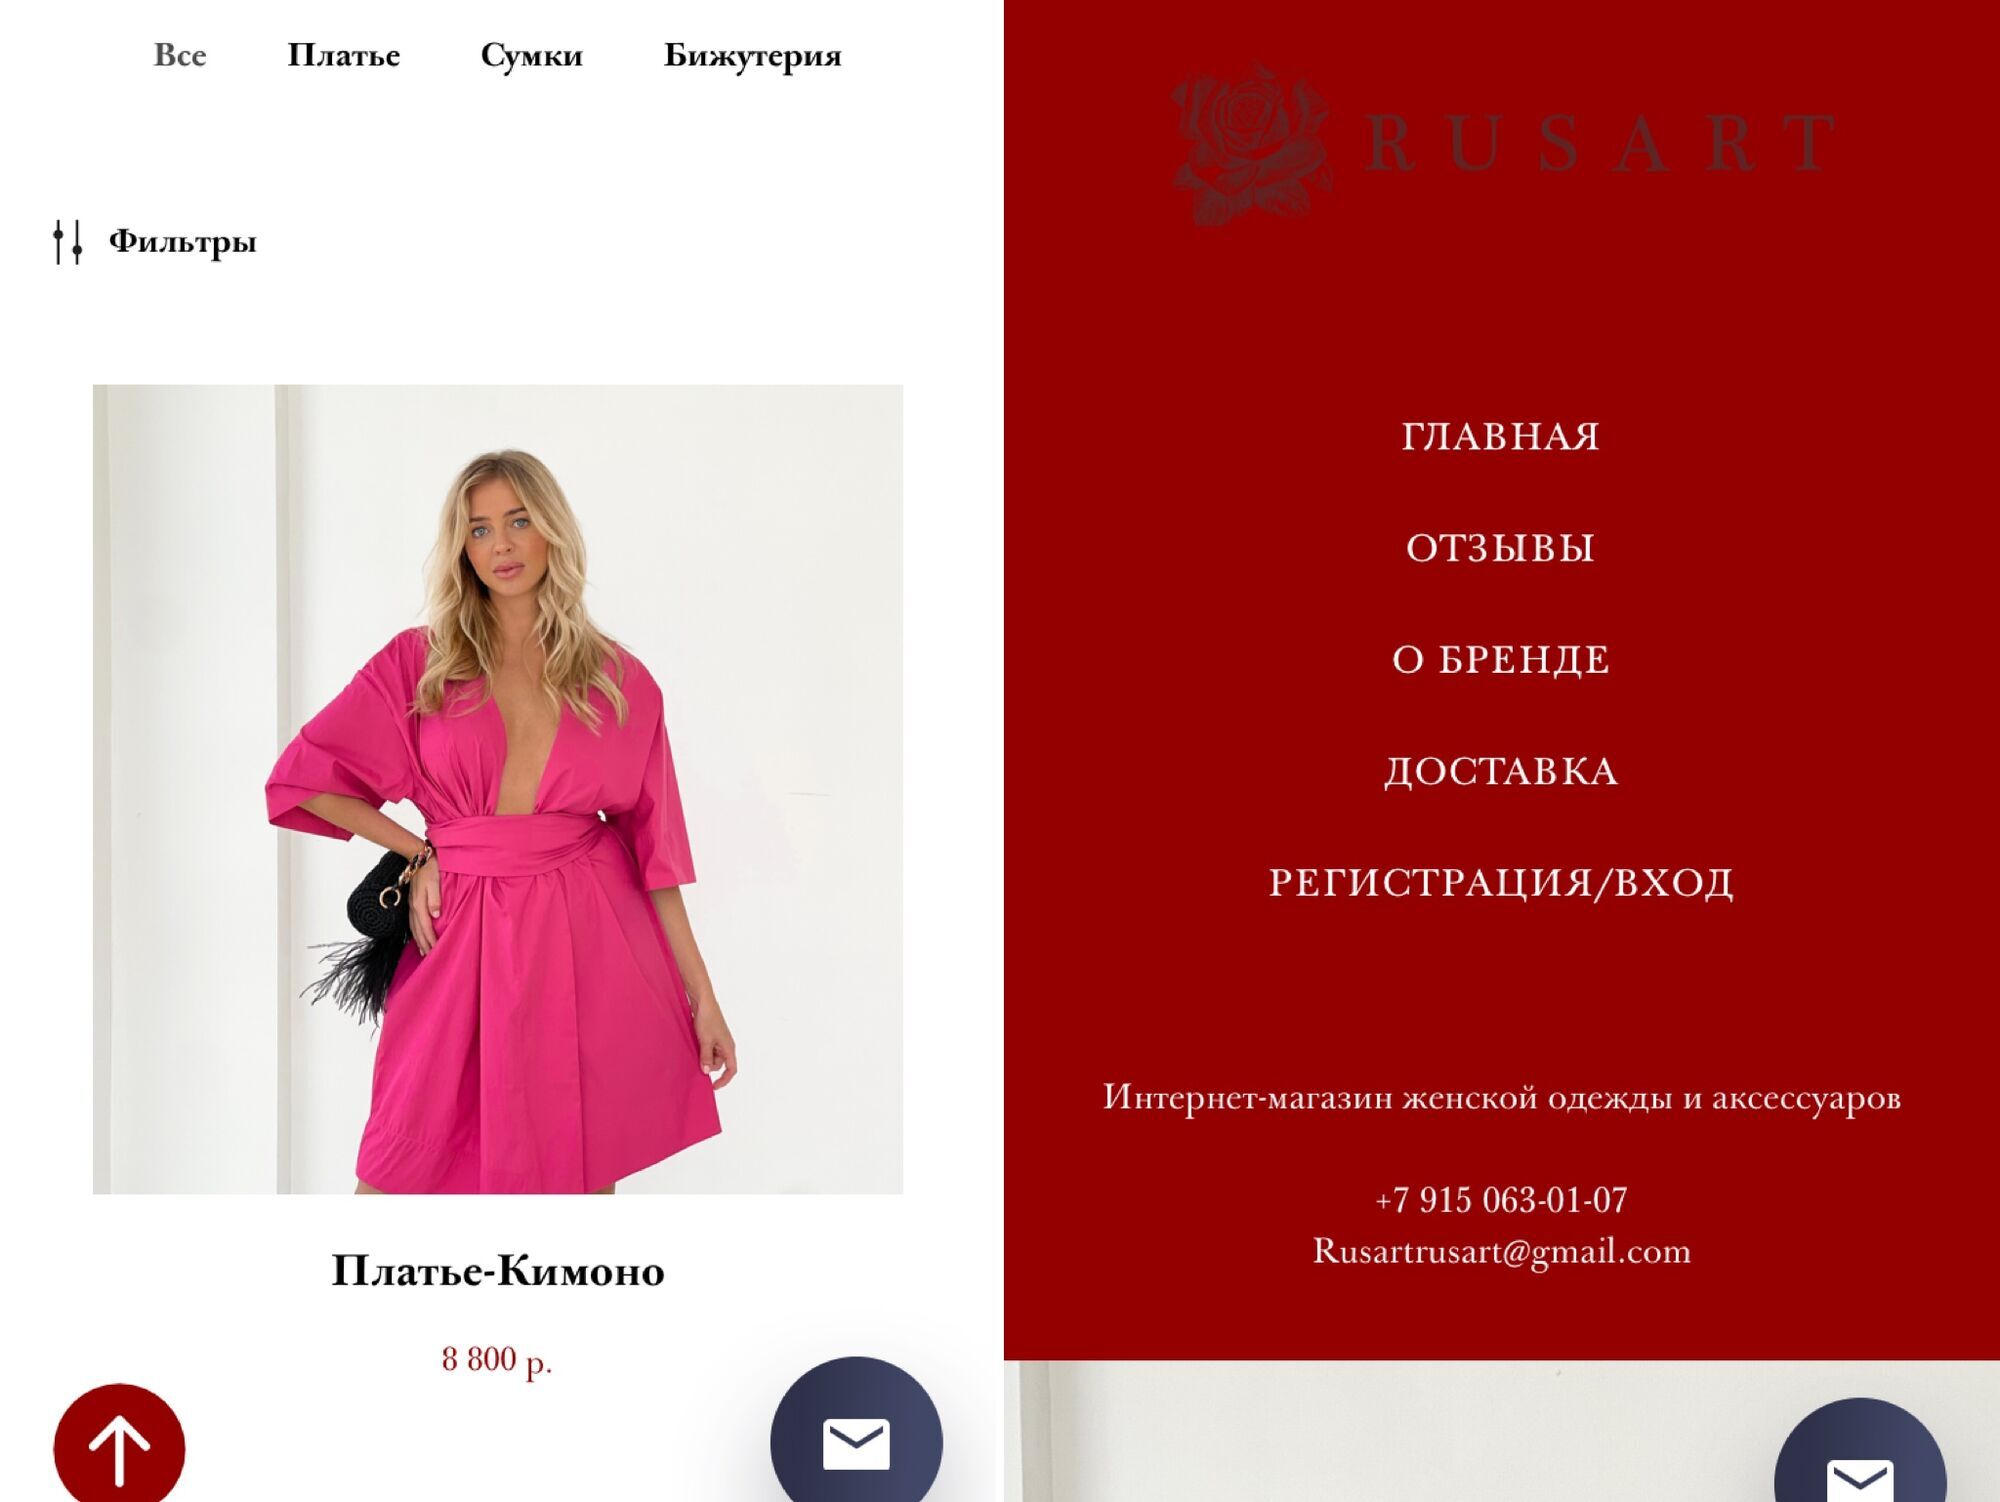 Міс Львів 2018 оскандалилася через рекламу російського магазину одягу